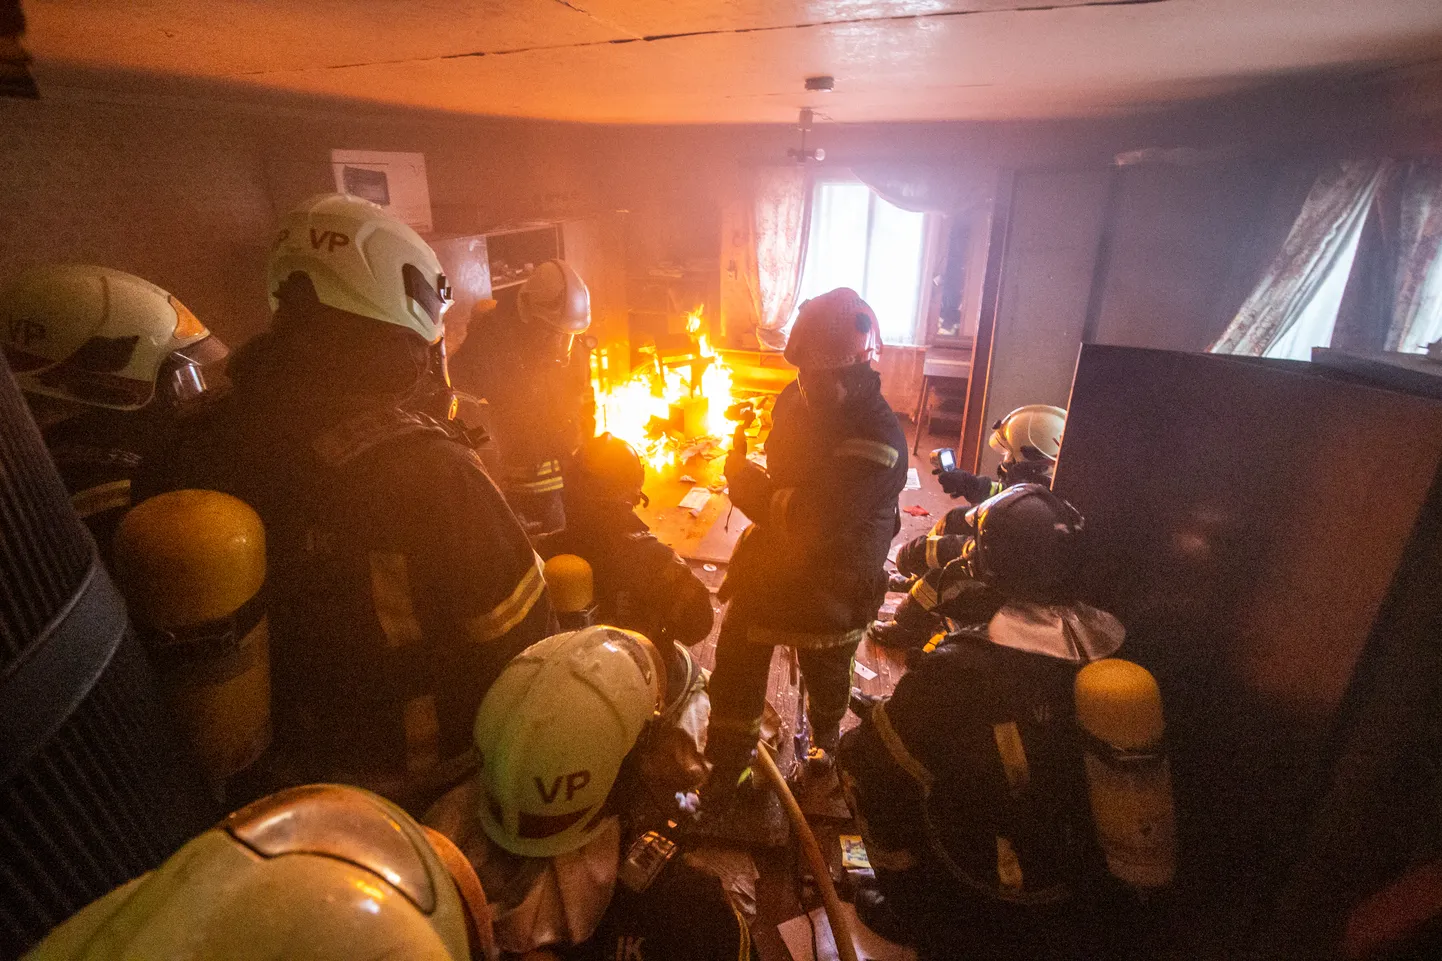 Пожарные спасатели работают в горящей и задымленной квартире. Фото сделано во время учений и носит иллюстративный характер.